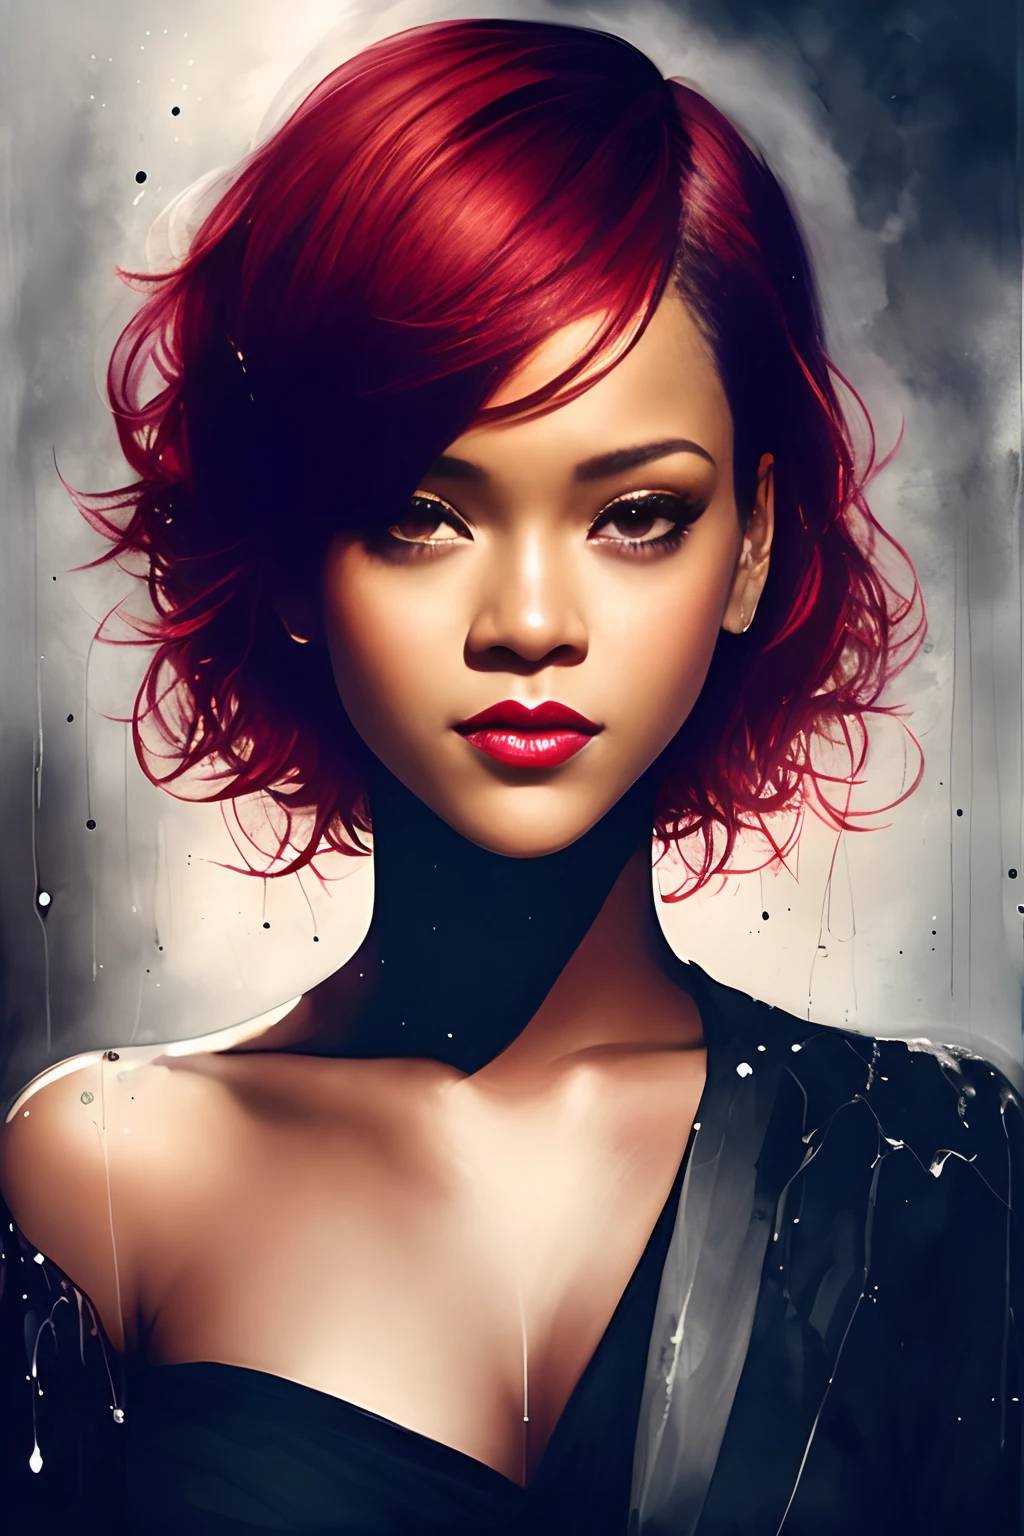 女性 (リアーナ) 短い赤い髪, 笑顔, アグネス・セシル, 明るいデザイン, 白黒, インクの滴, 秋の光